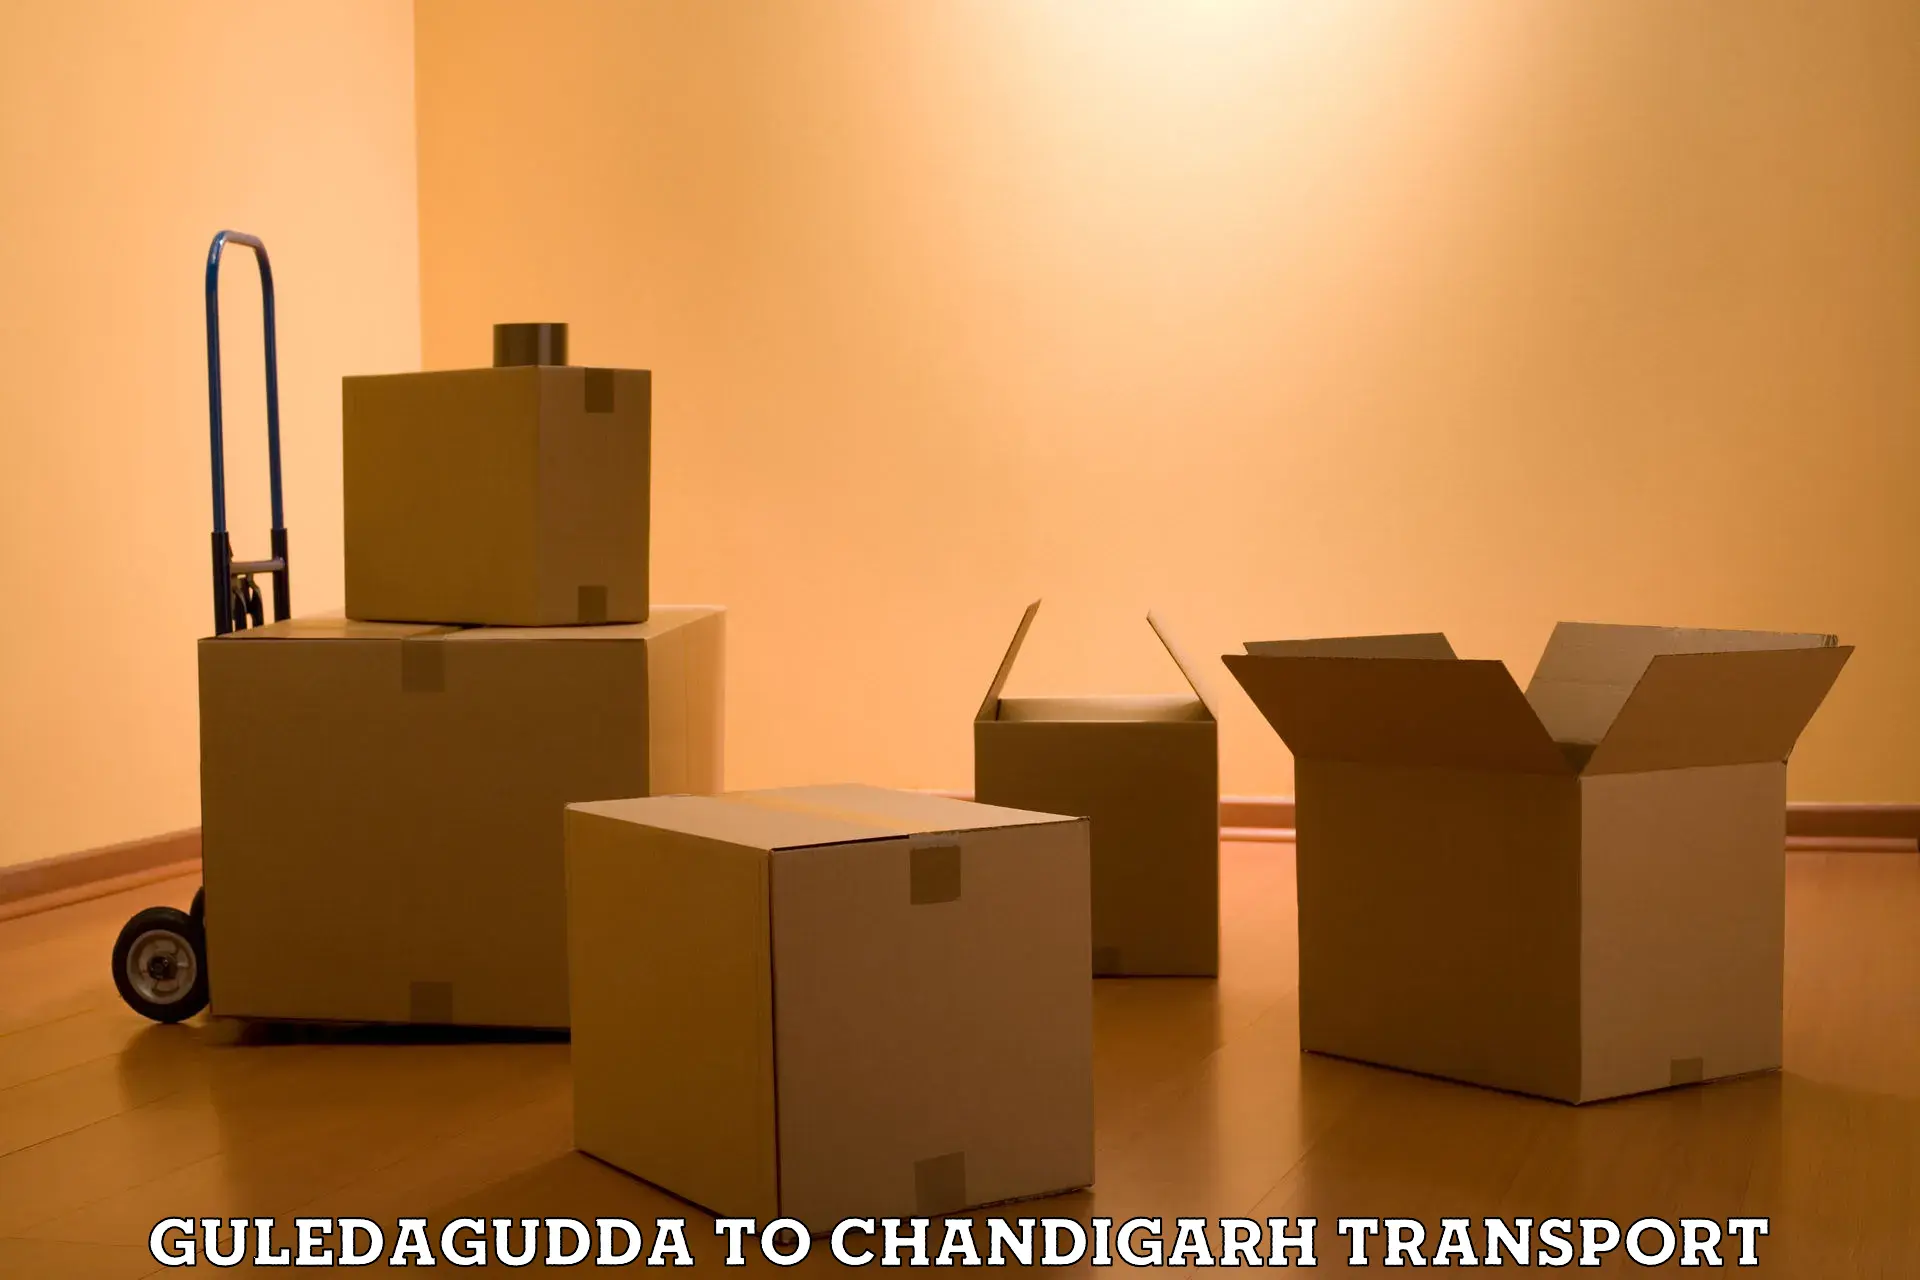 Vehicle transport services Guledagudda to Chandigarh